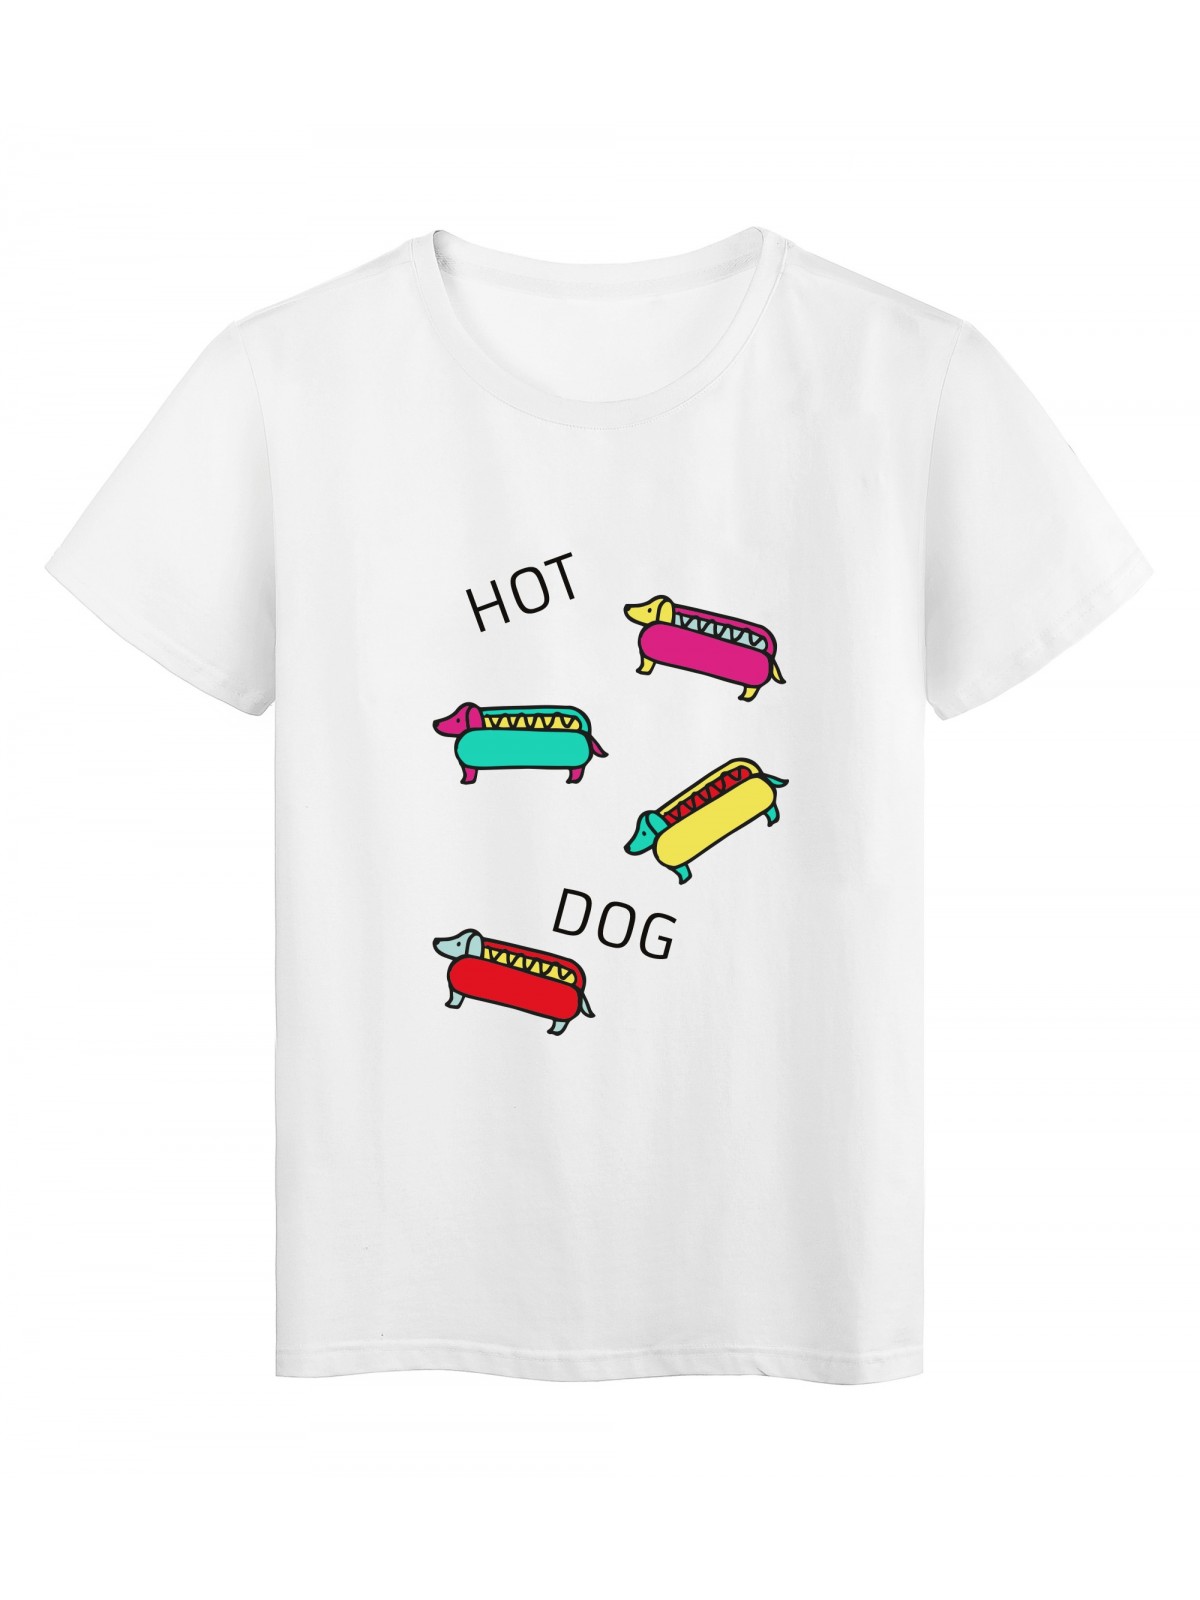 T-Shirt imprimÃ© citation humour Hot dog ref 2508